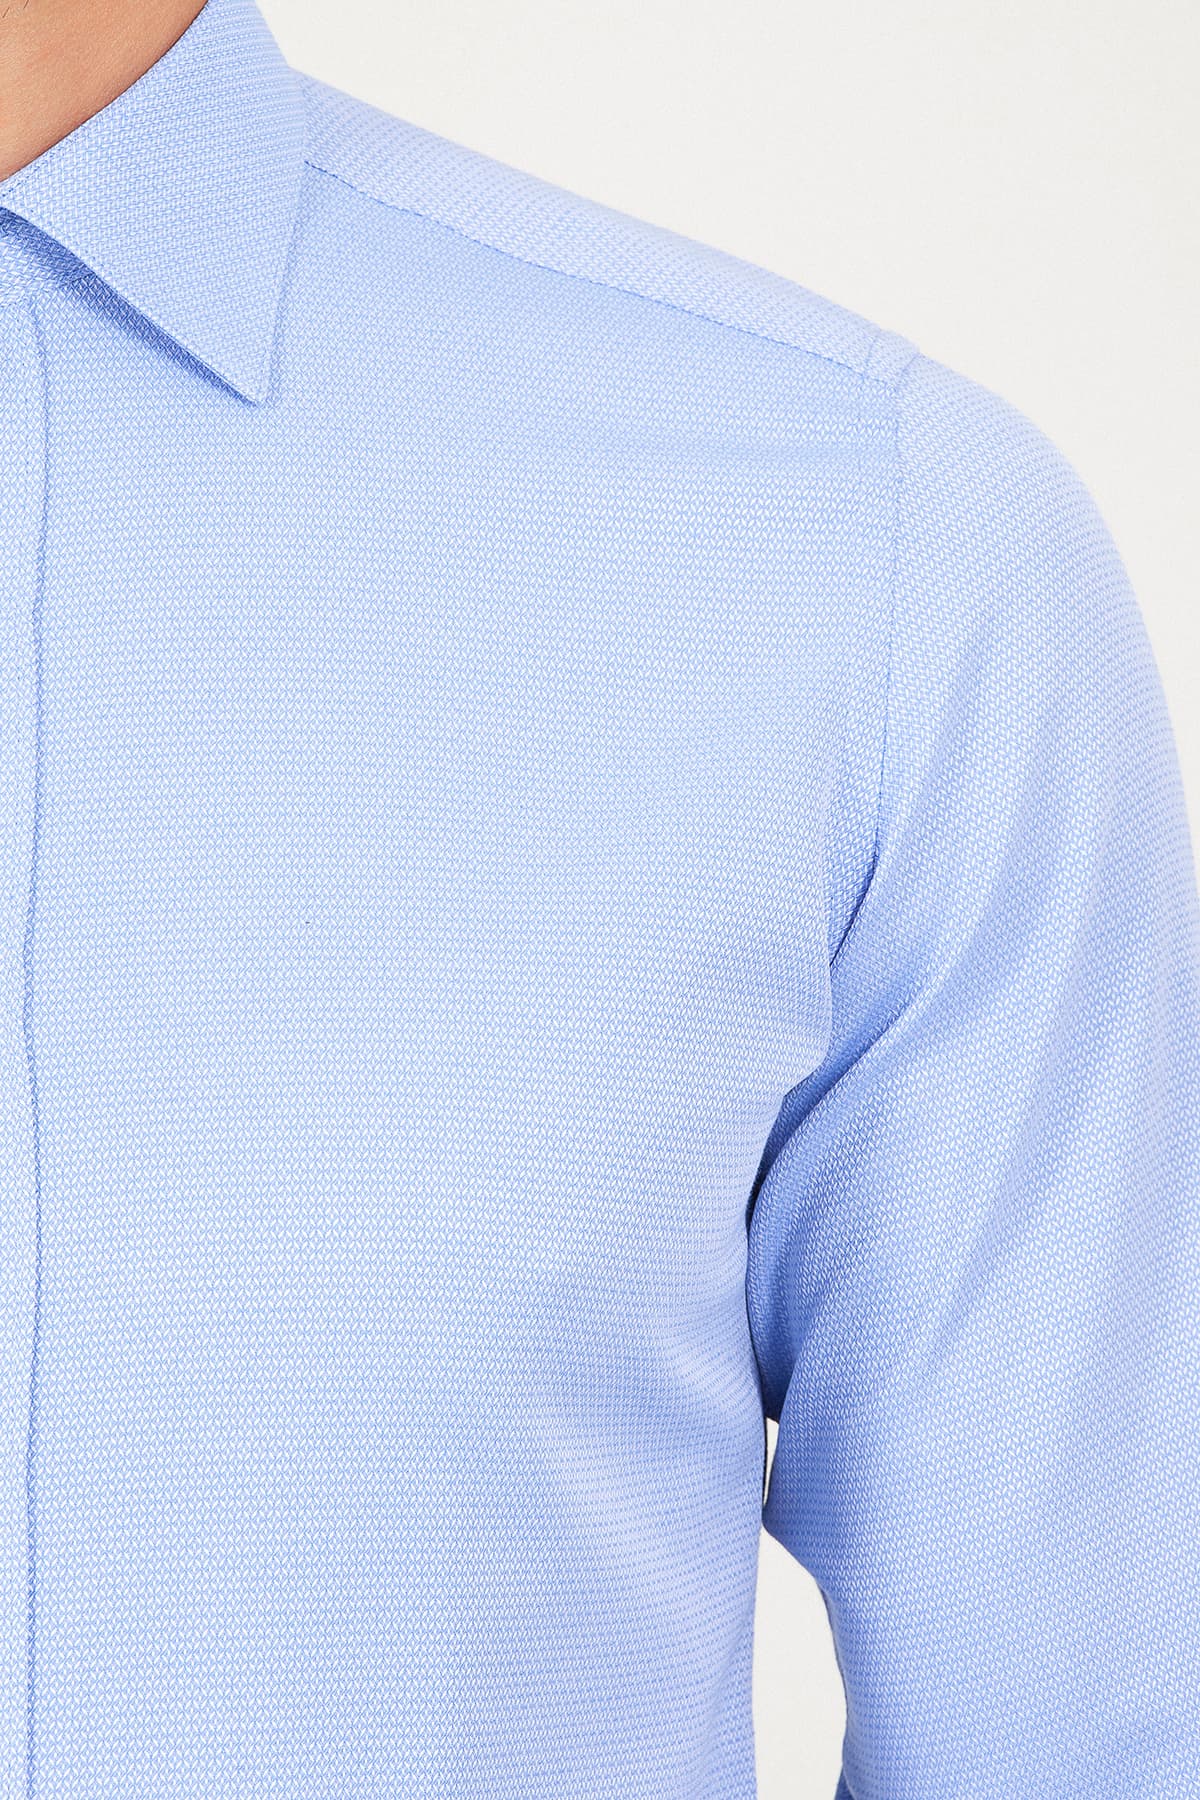 Mavi Slim Fit Desenli Pamuklu Uzun Kol Spor Gömlek